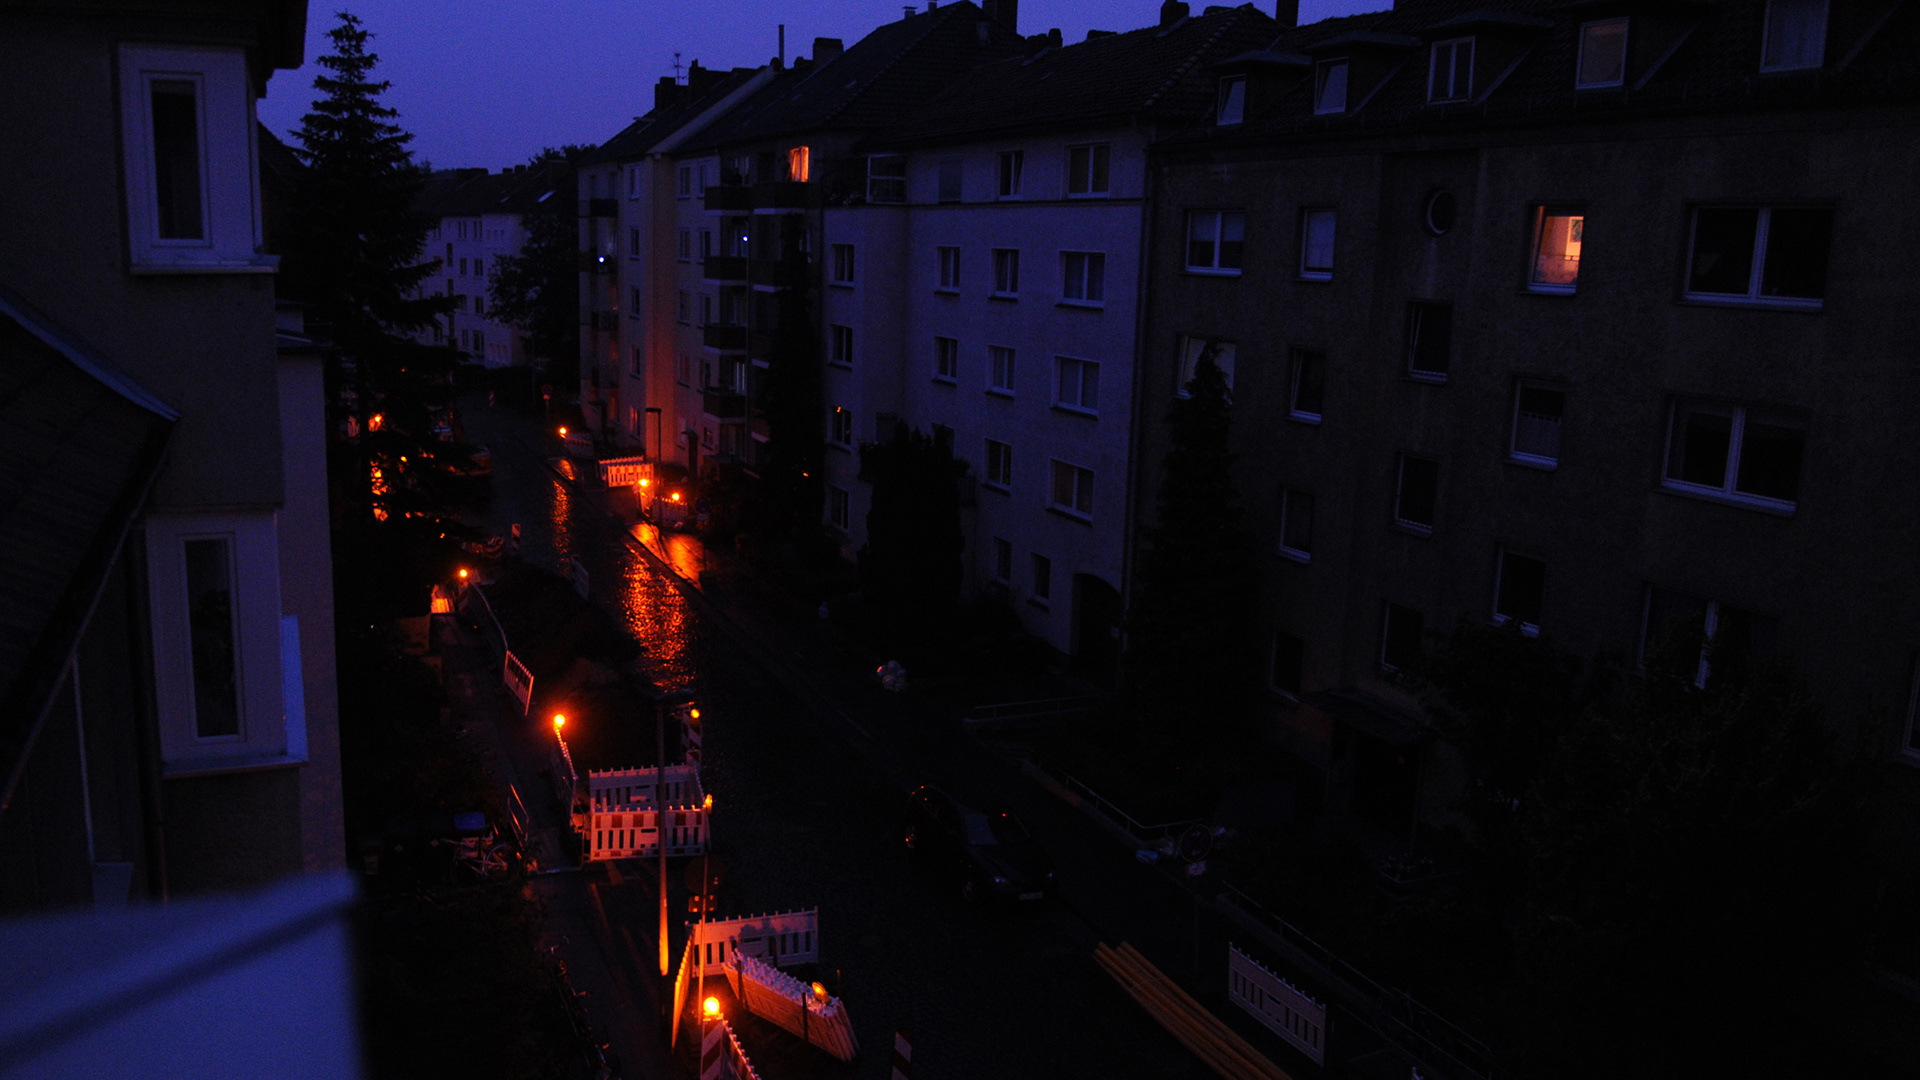 Stromausfall in Hannover im Juli 2011: Akkubetriebene Lampen einer Baustelle sorgen für etwas Licht. | dpa